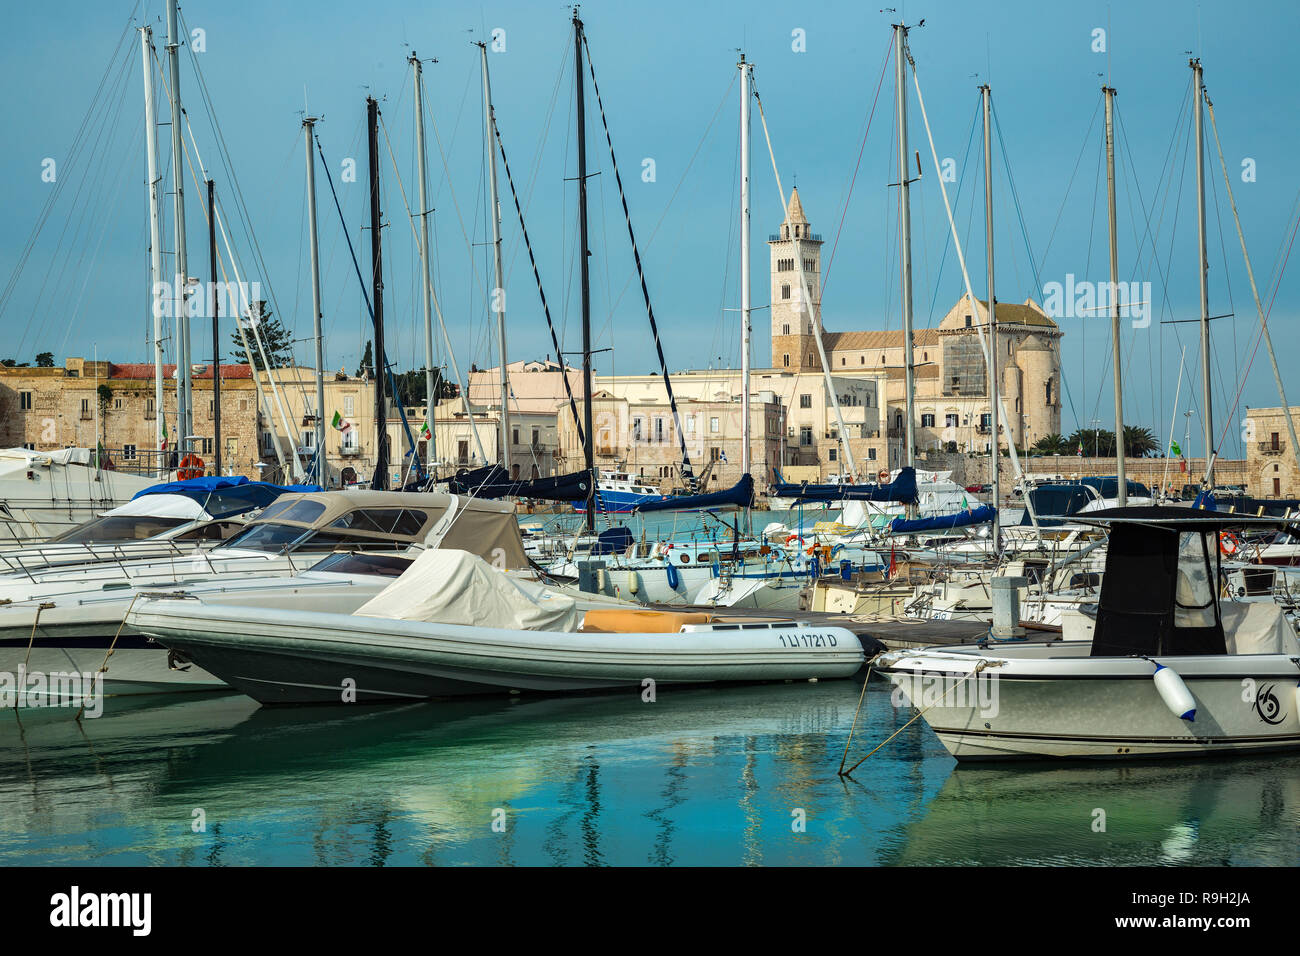 Port de Trani sur la mer Adriatique avec une vue de la cathédrale de San Nicola Pellegrino Banque D'Images